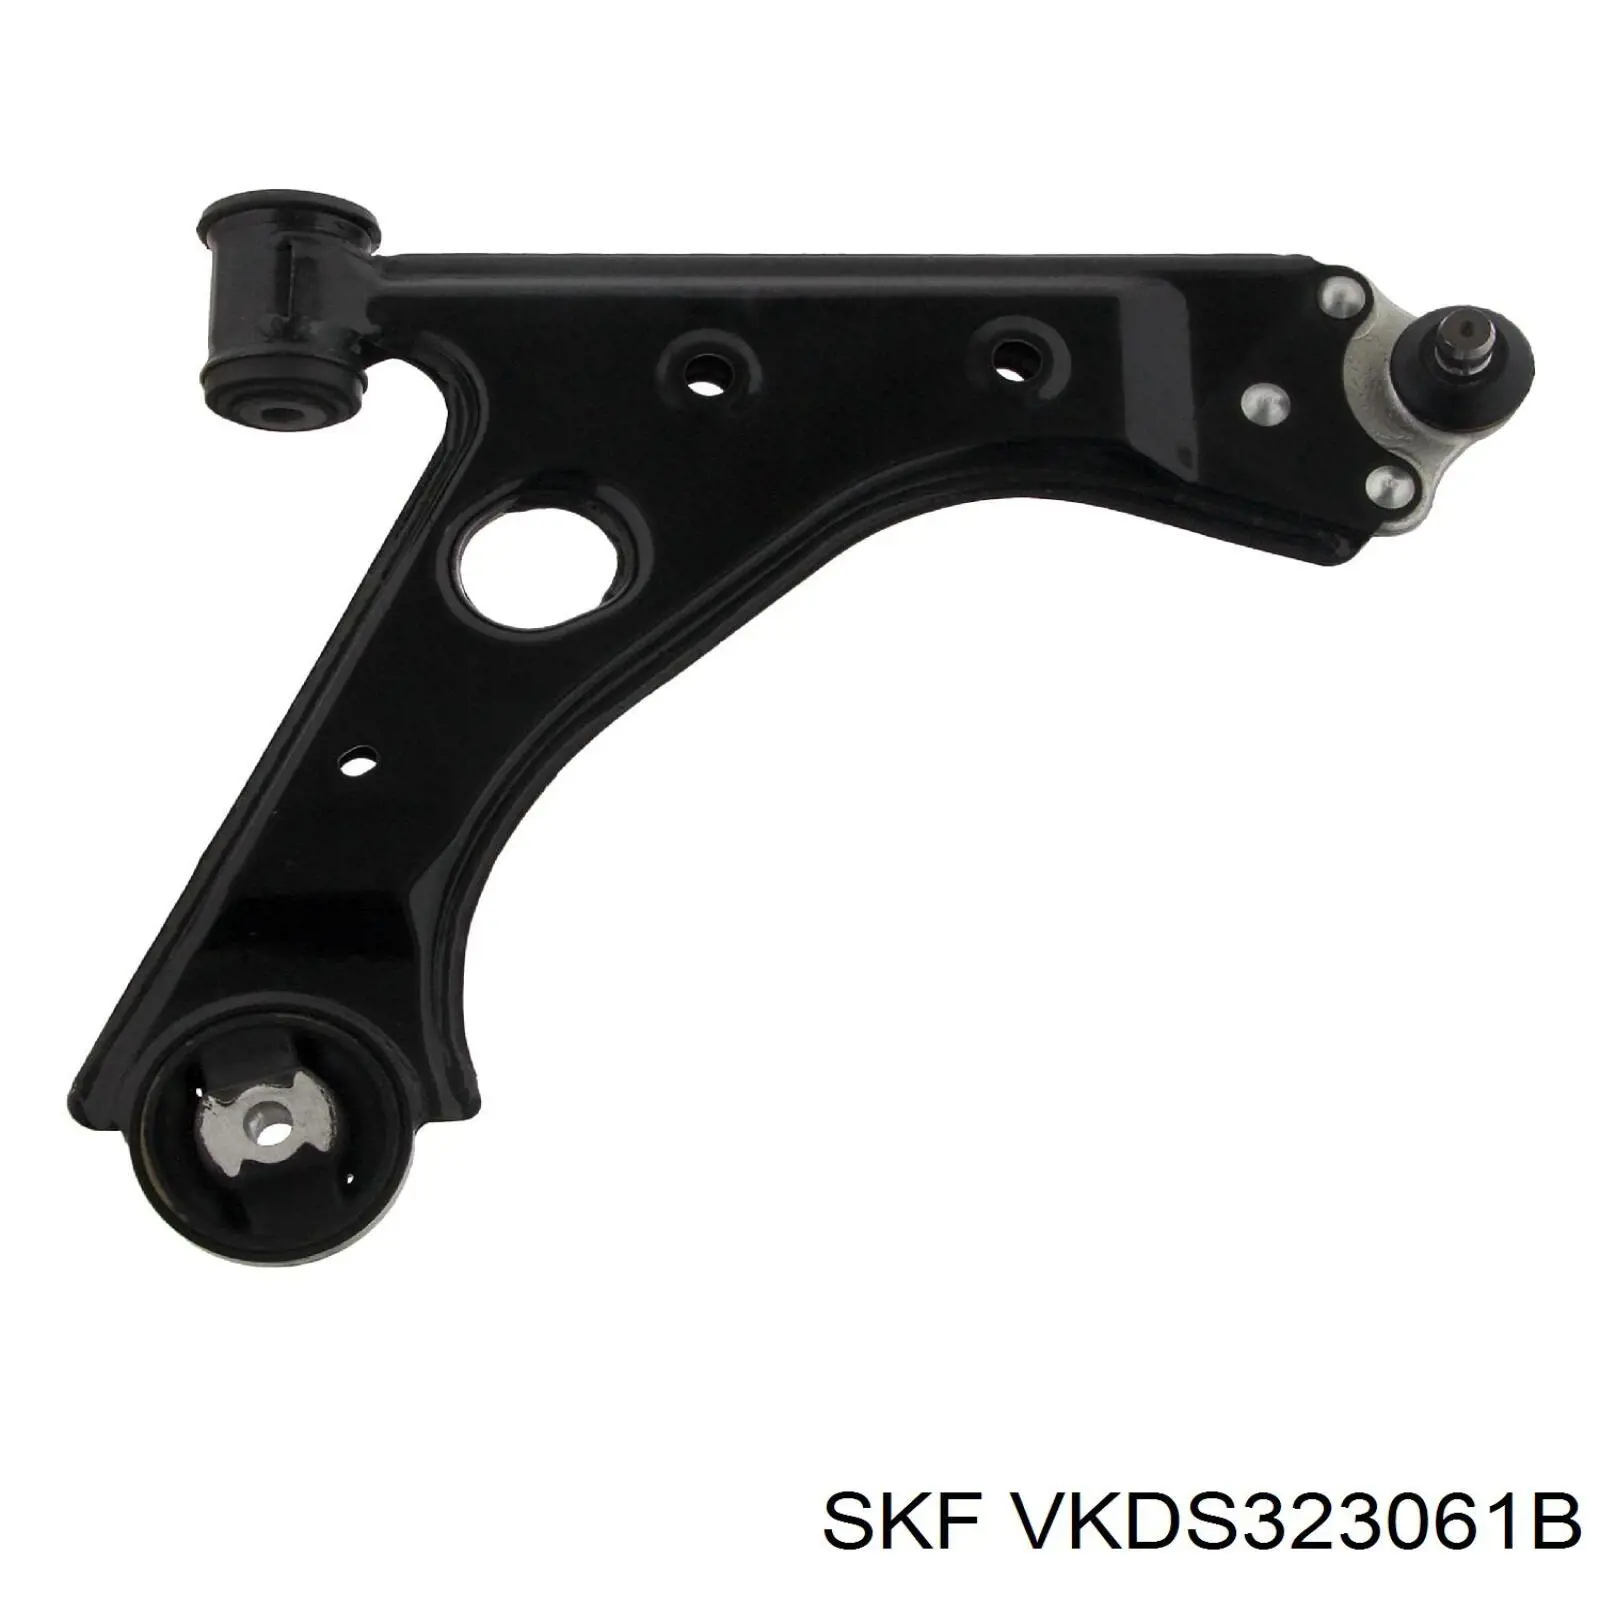 VKDS 323061 B SKF barra oscilante, suspensión de ruedas delantera, inferior derecha